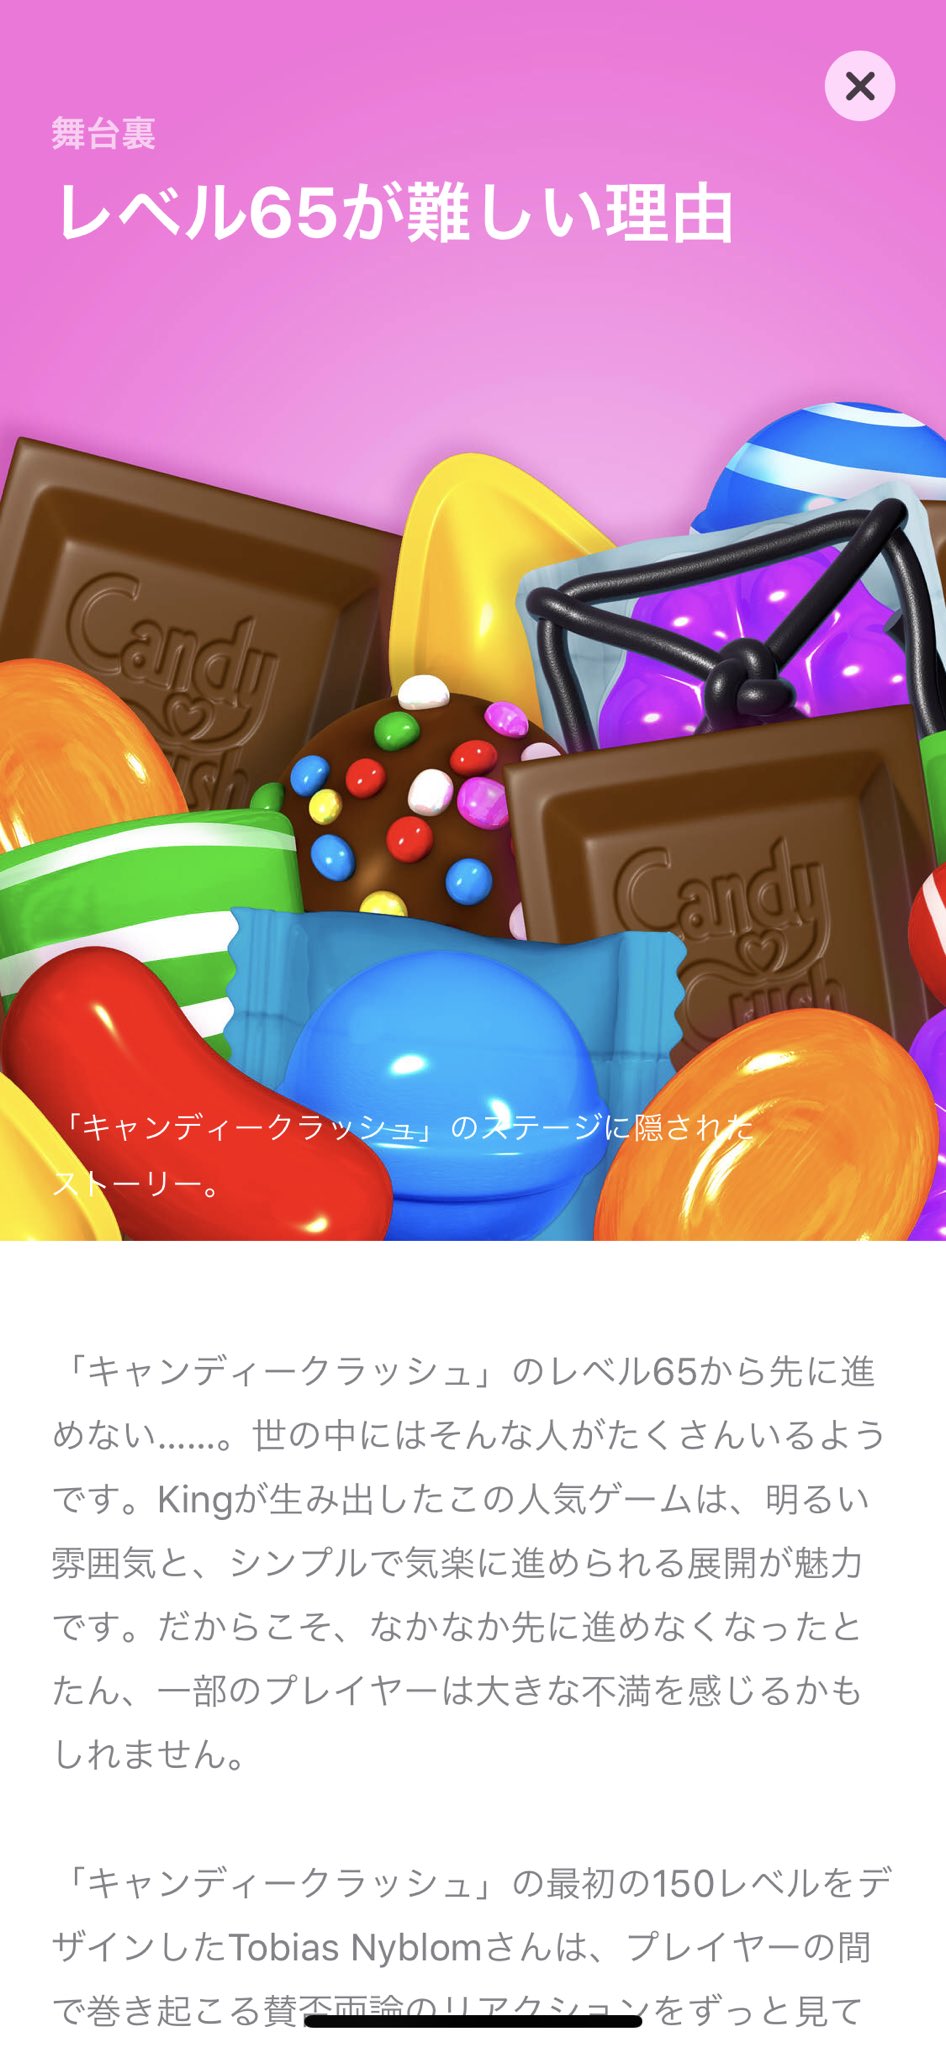 キャンディークラッシュ Candycrush Twitter